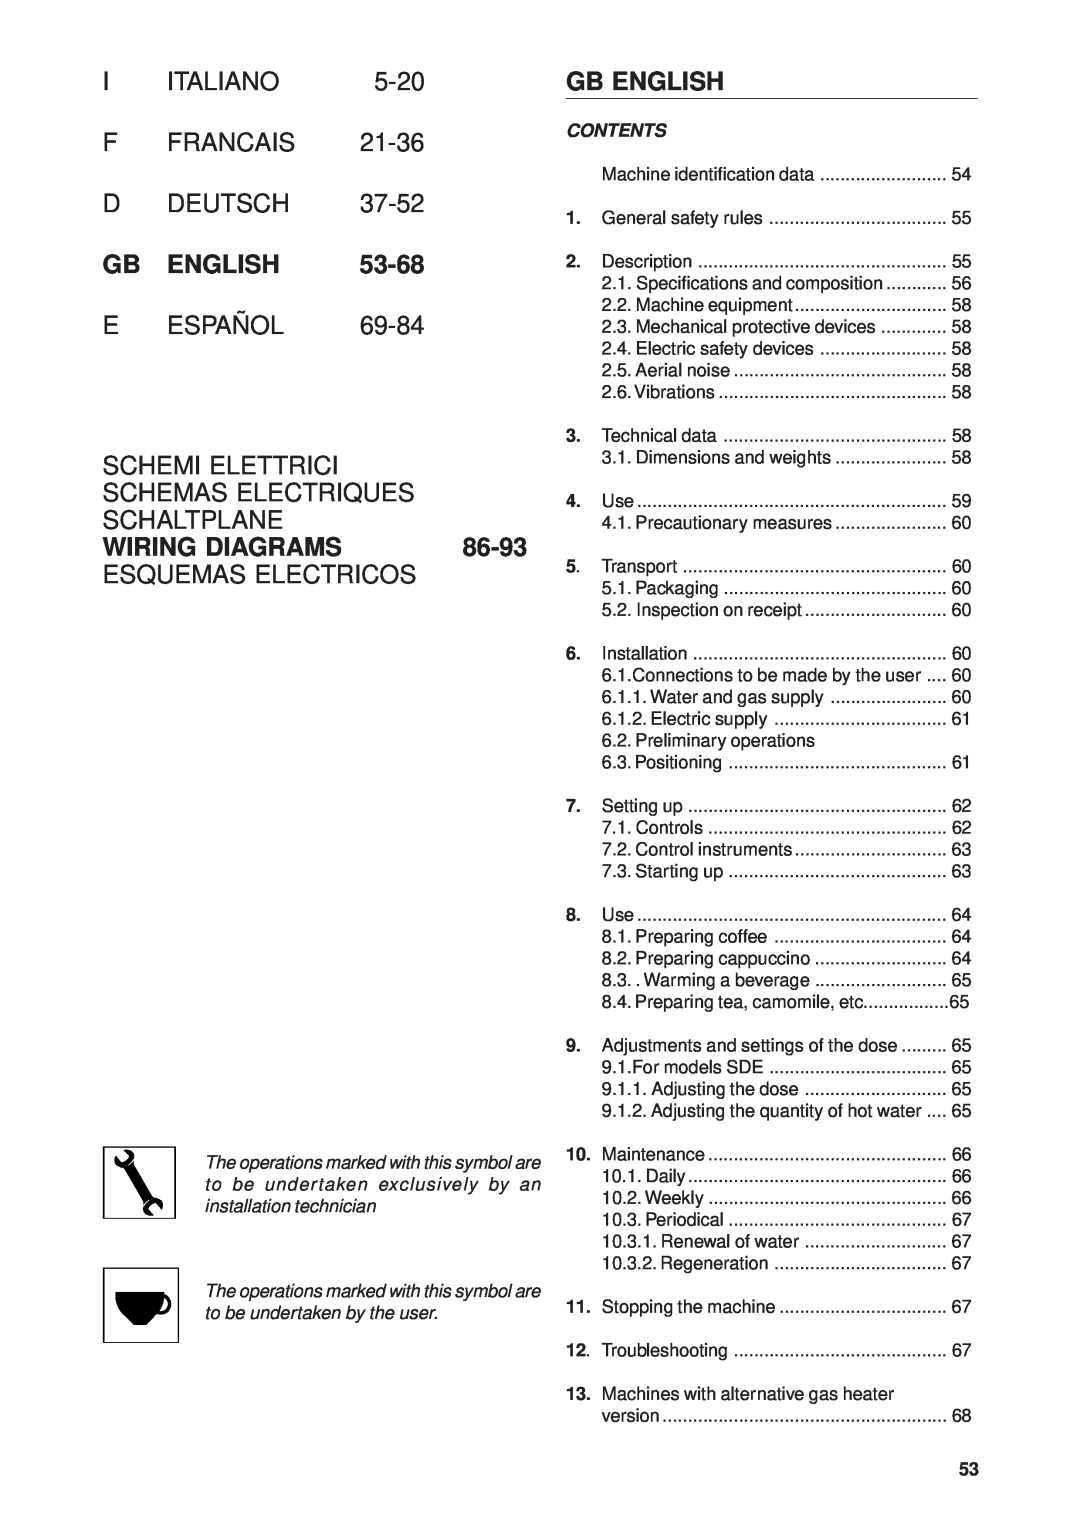 Rancilio Millennium Gb English, 53-68, Schemas Electriques, Schaltplane, Wiring Diagrams, Esquemas Electricos, Italiano 